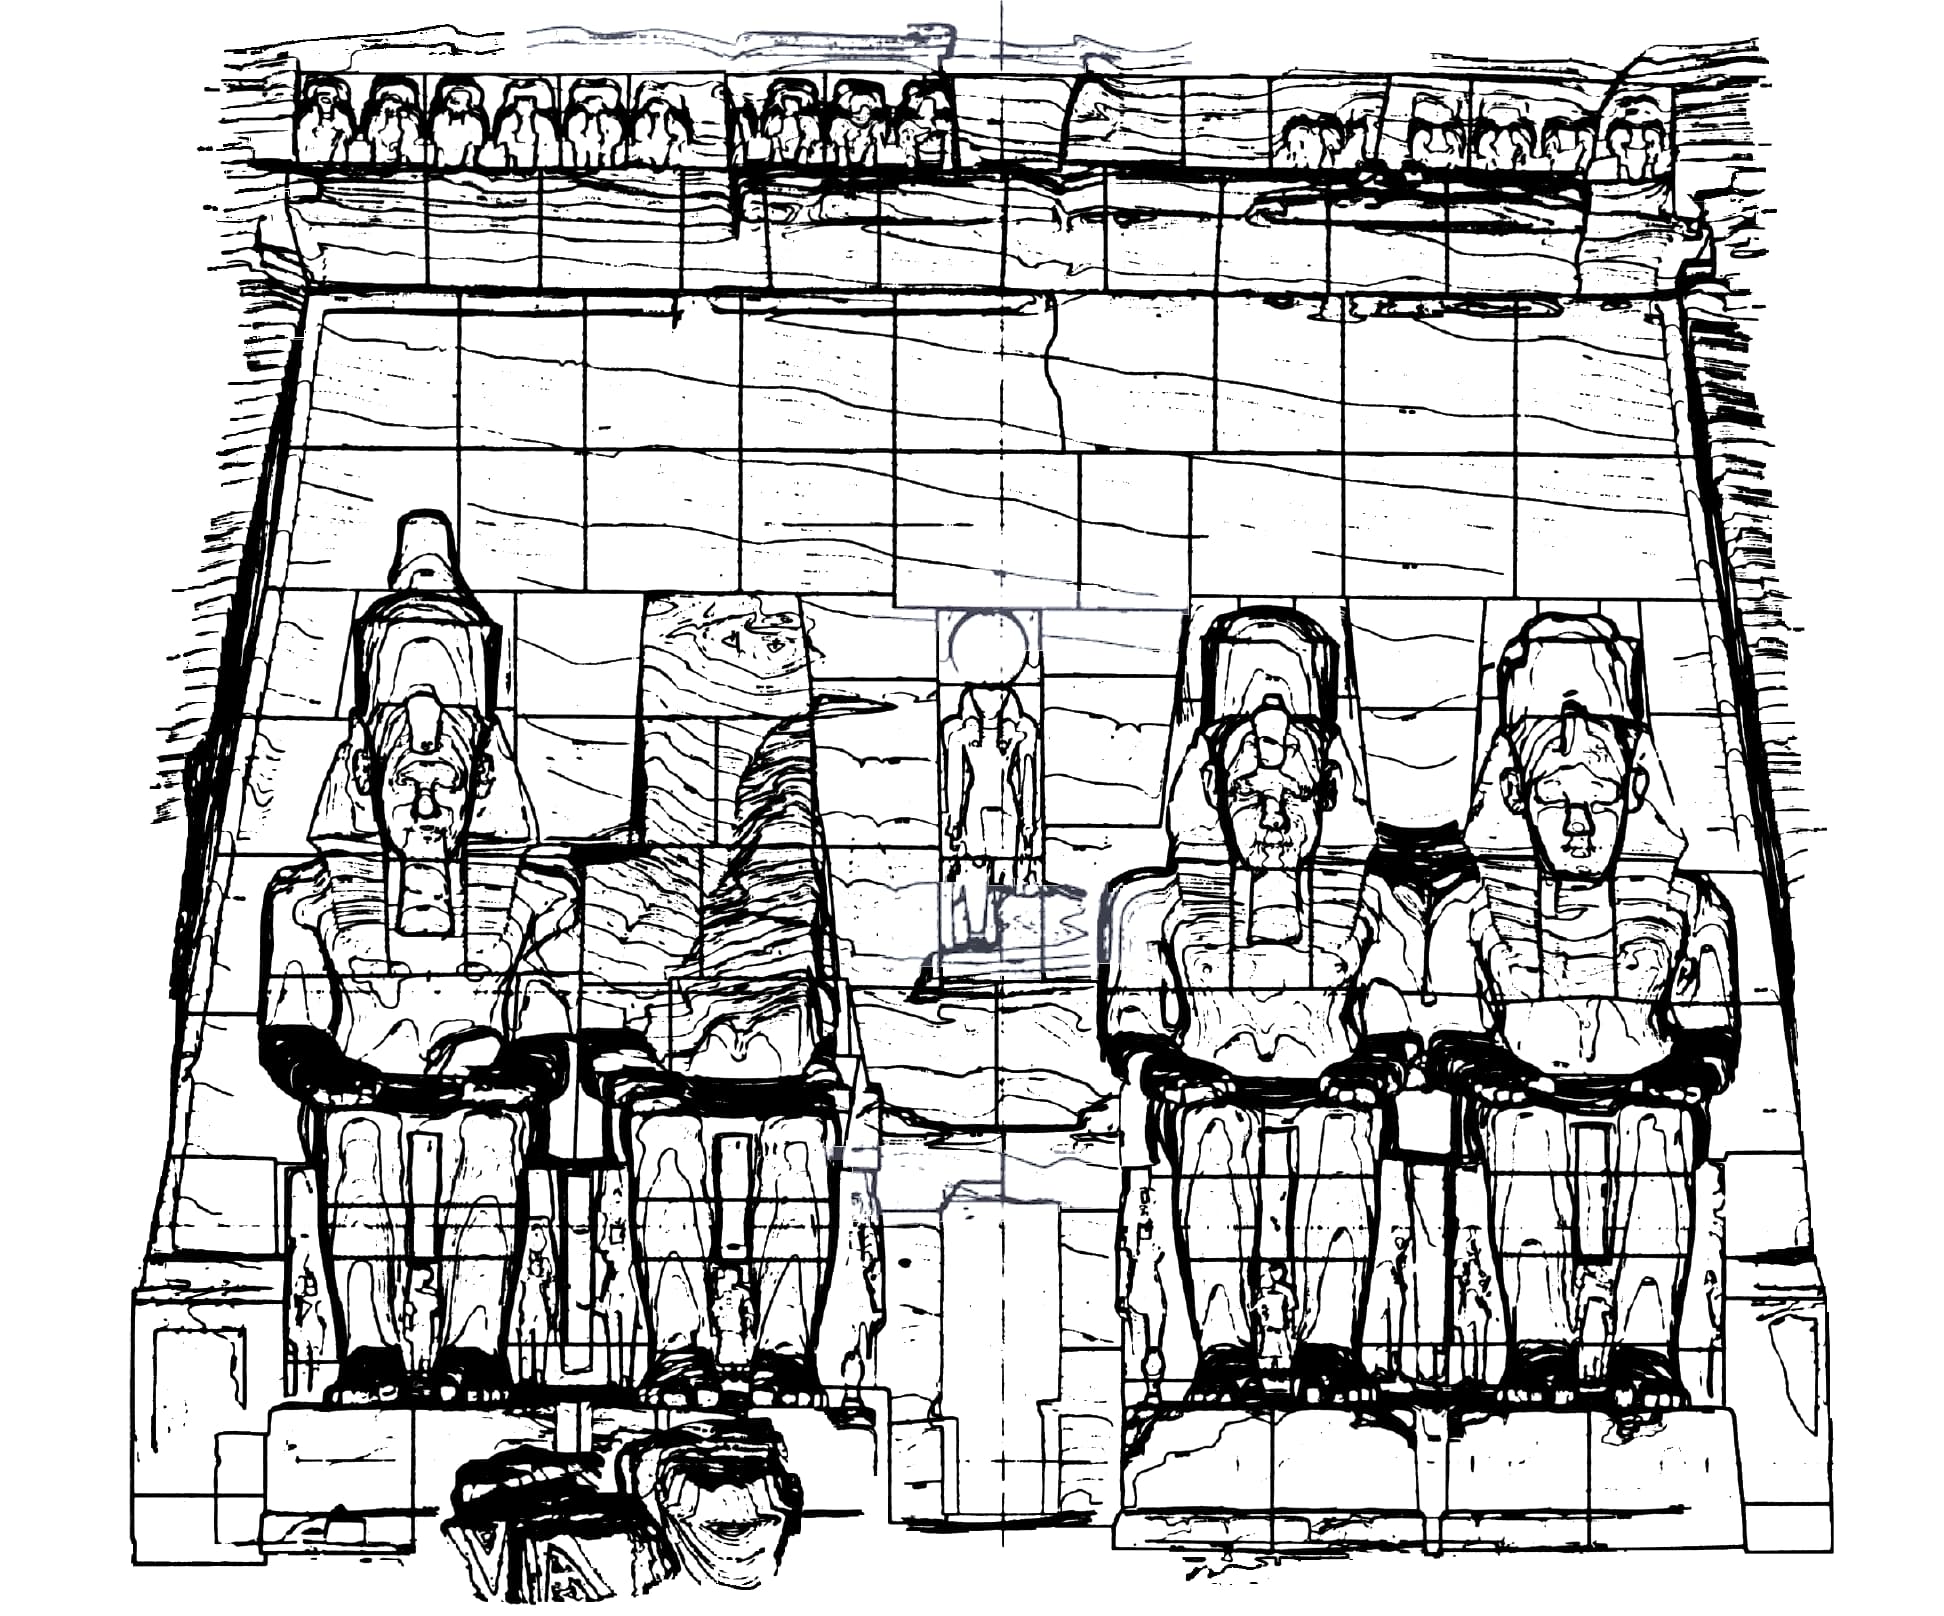 A sketch of Abu Simbel 